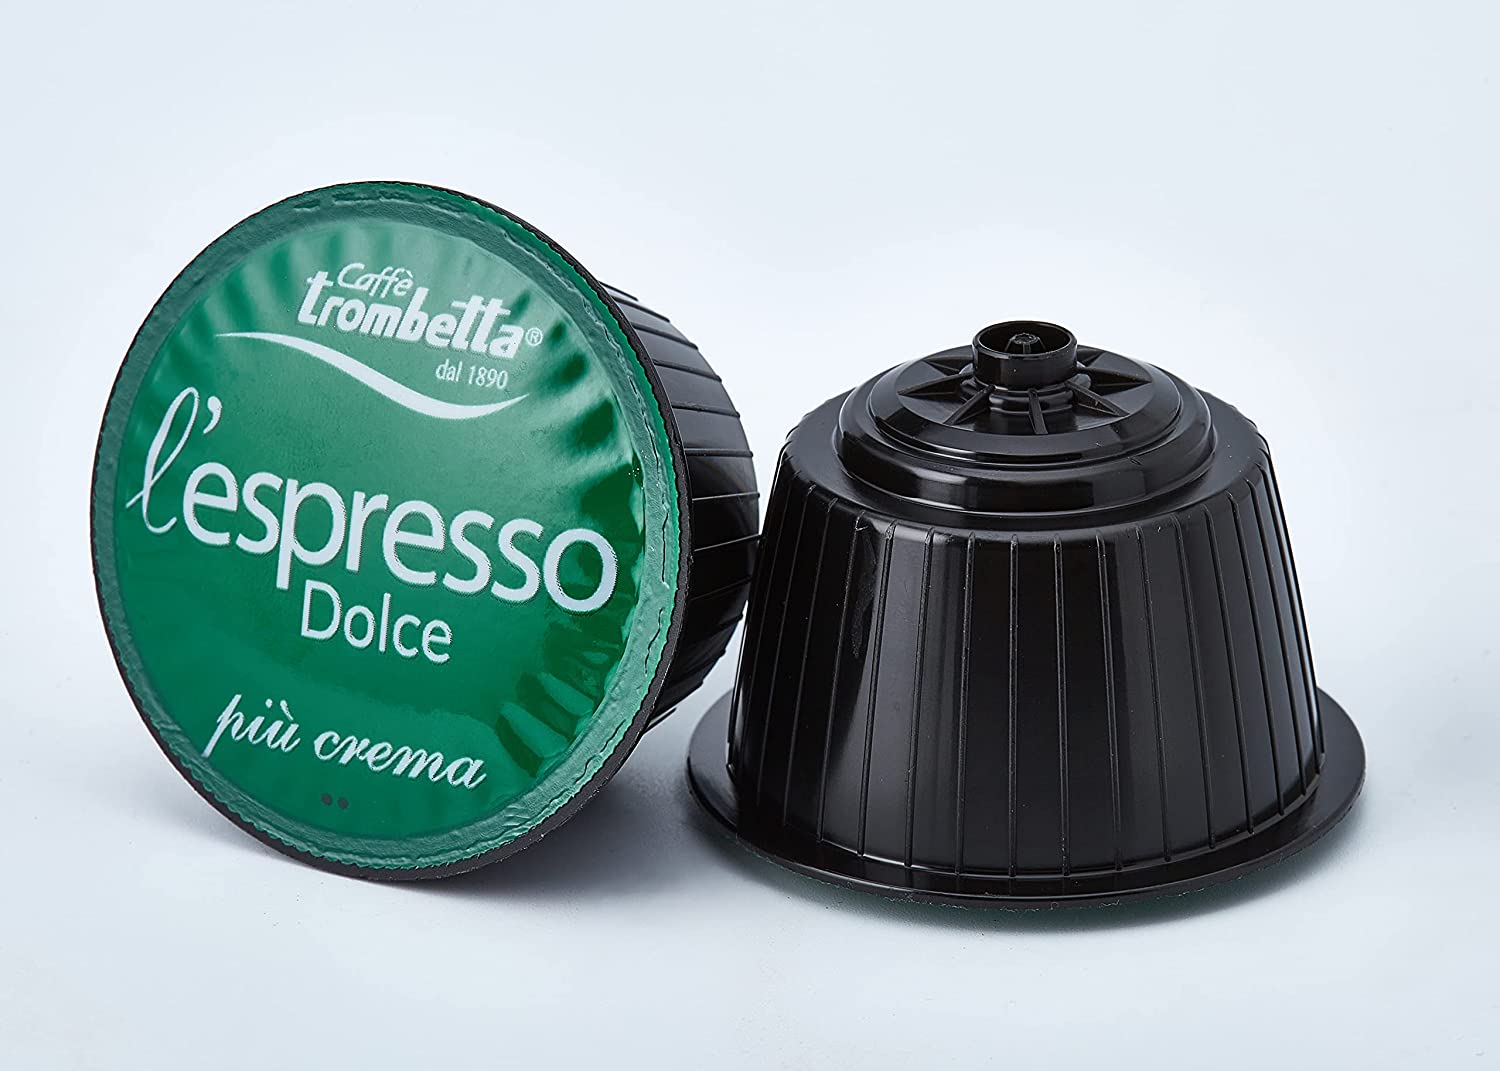 Caffè Trombetta L'Espresso Dolce, Capsule Compatibili Nescafè Dolce Gusto, Più Crema - 16 Capsule